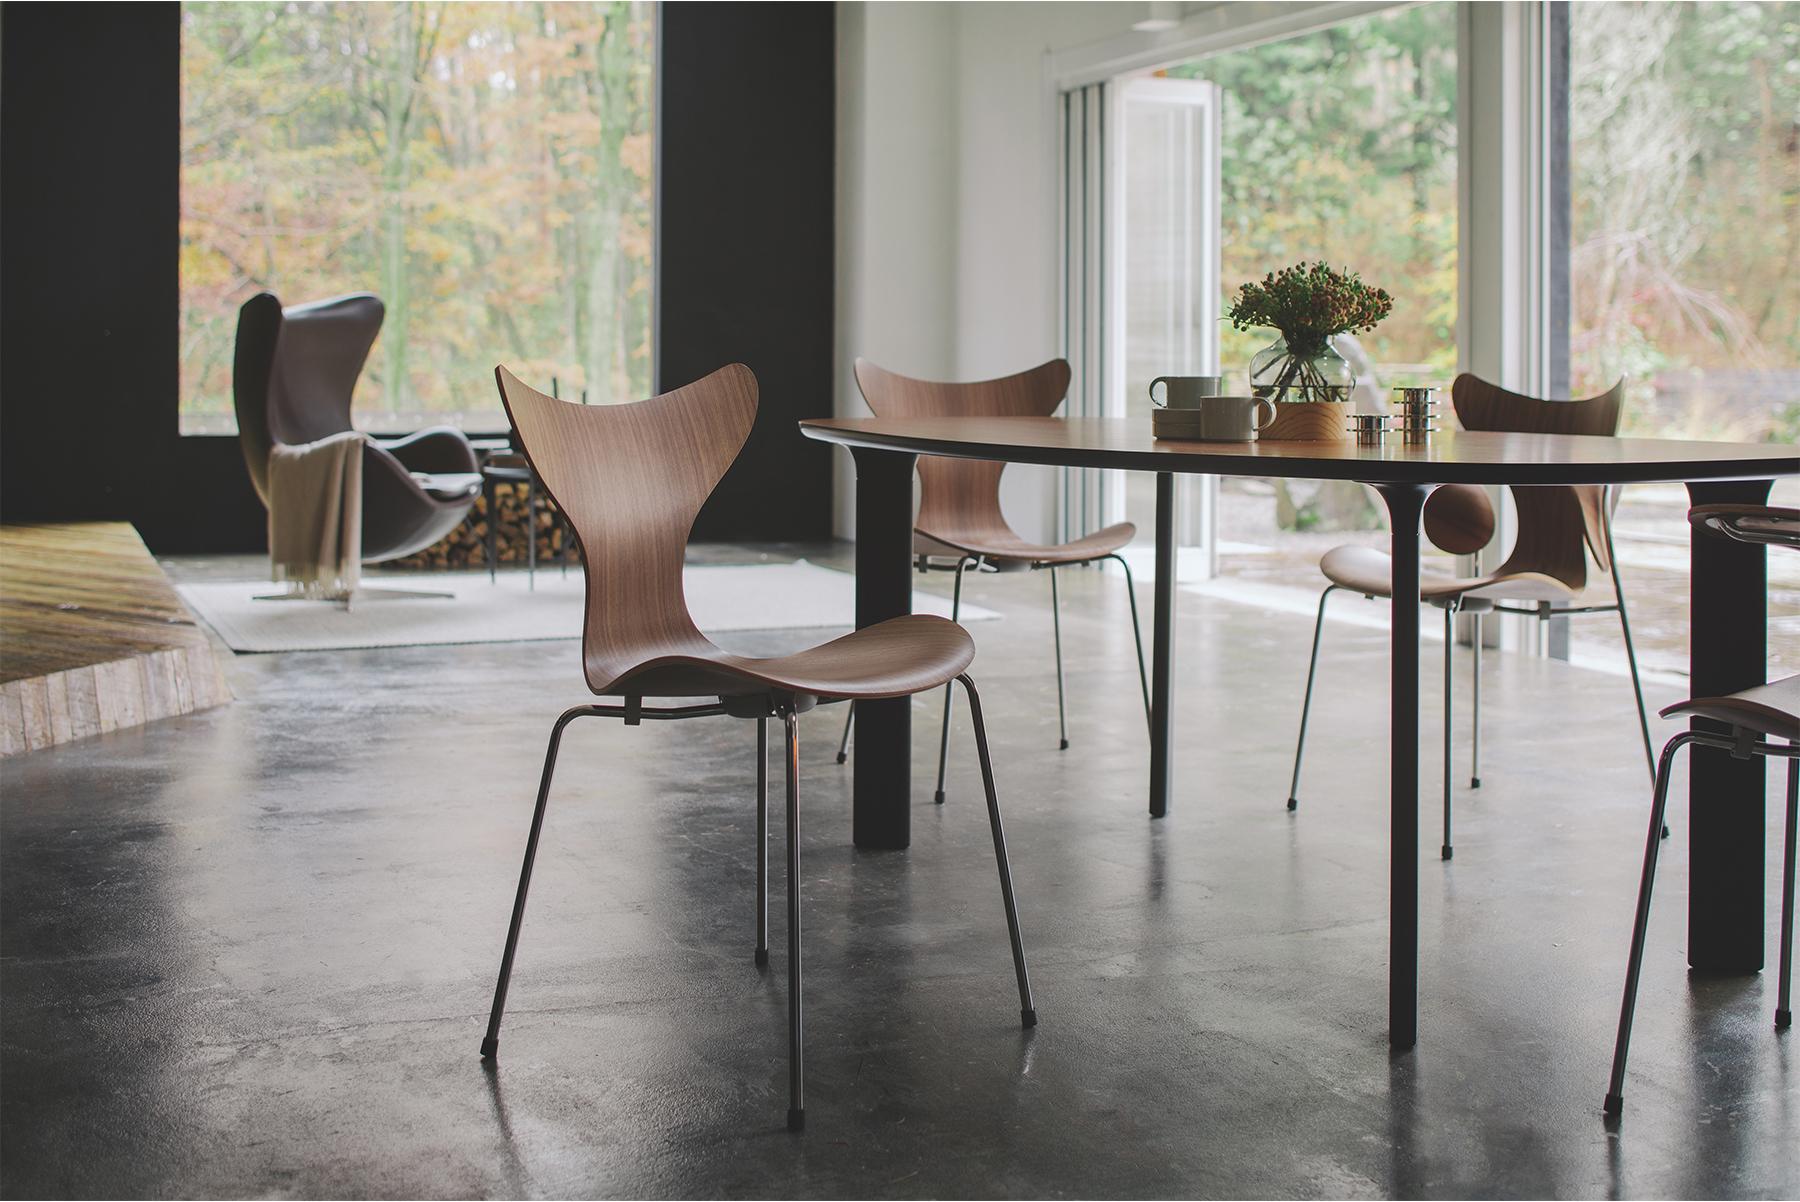 Die Lily™ wurde ursprünglich für die Dänische Nationalbank entworfen. Das erste Modell war 3108 aus dem Jahr 1968, und auf der dänischen Möbelmesse 1970 wurde der Stuhl mit Armlehnen, Modell 3208, auf den Markt gebracht. Der Stuhl besteht aus